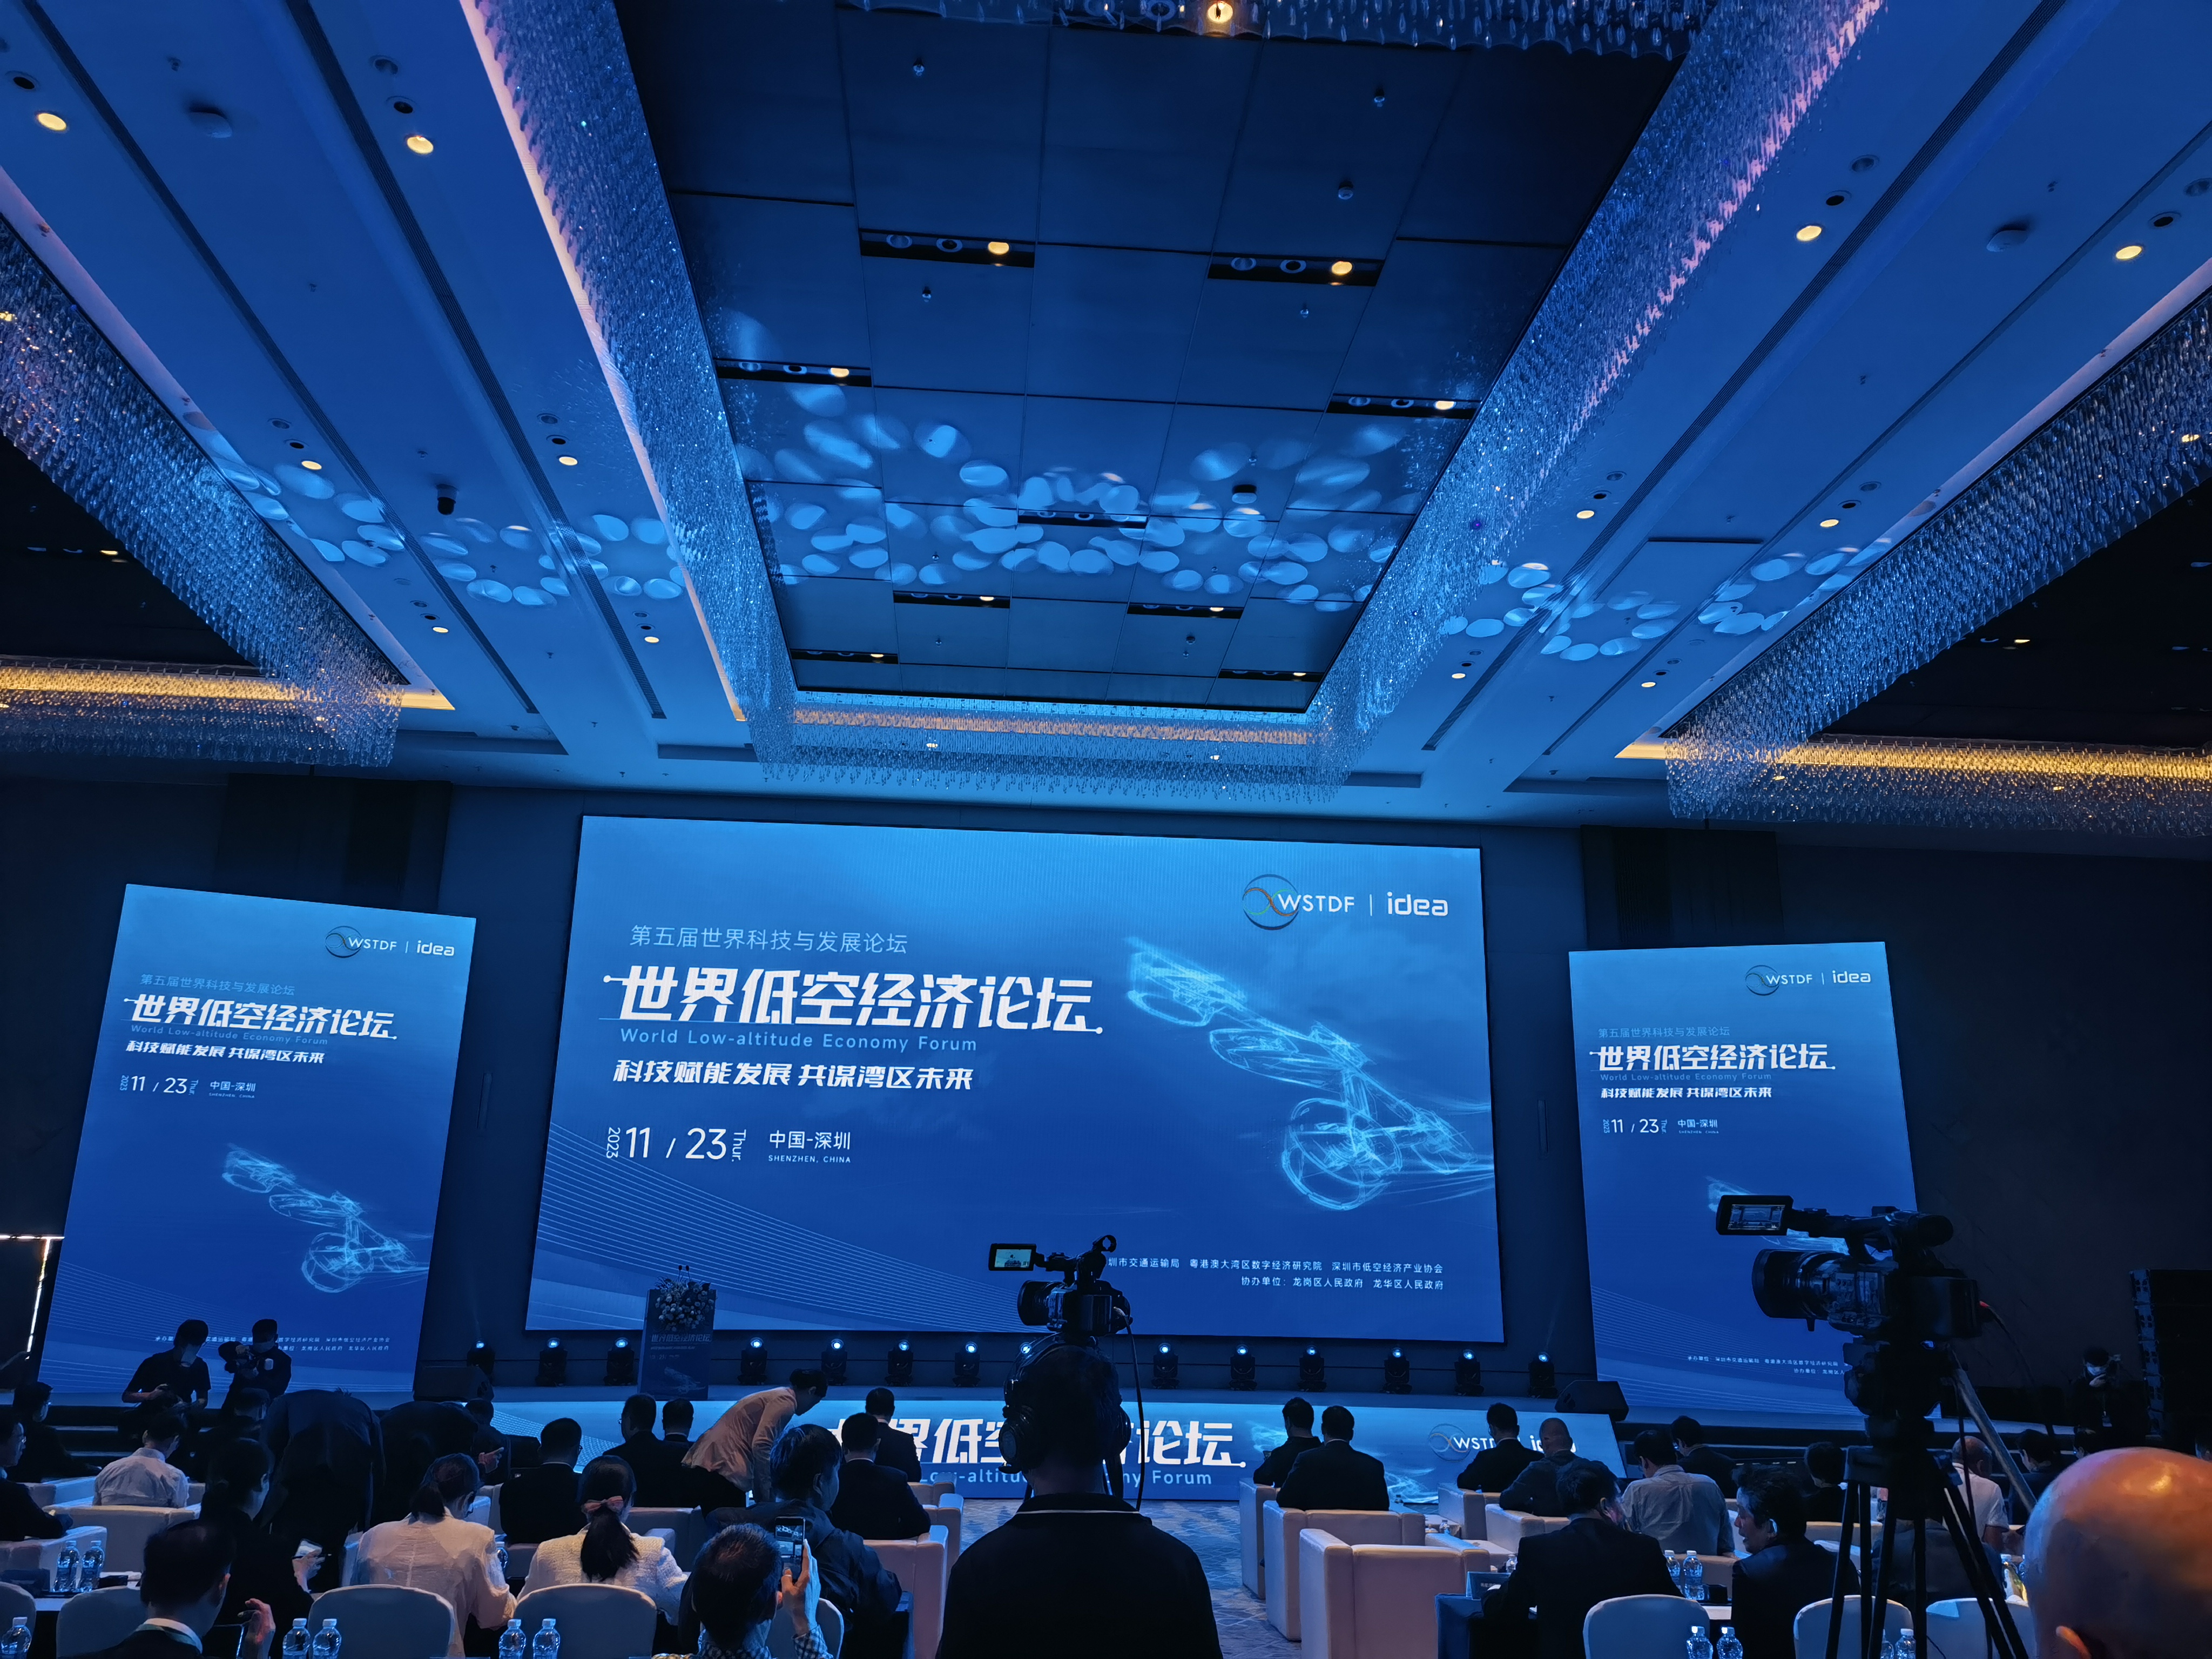 世界低空经济论坛在深圳举行 深圳加速布局“天空之城” 推动低空经济高质量发展